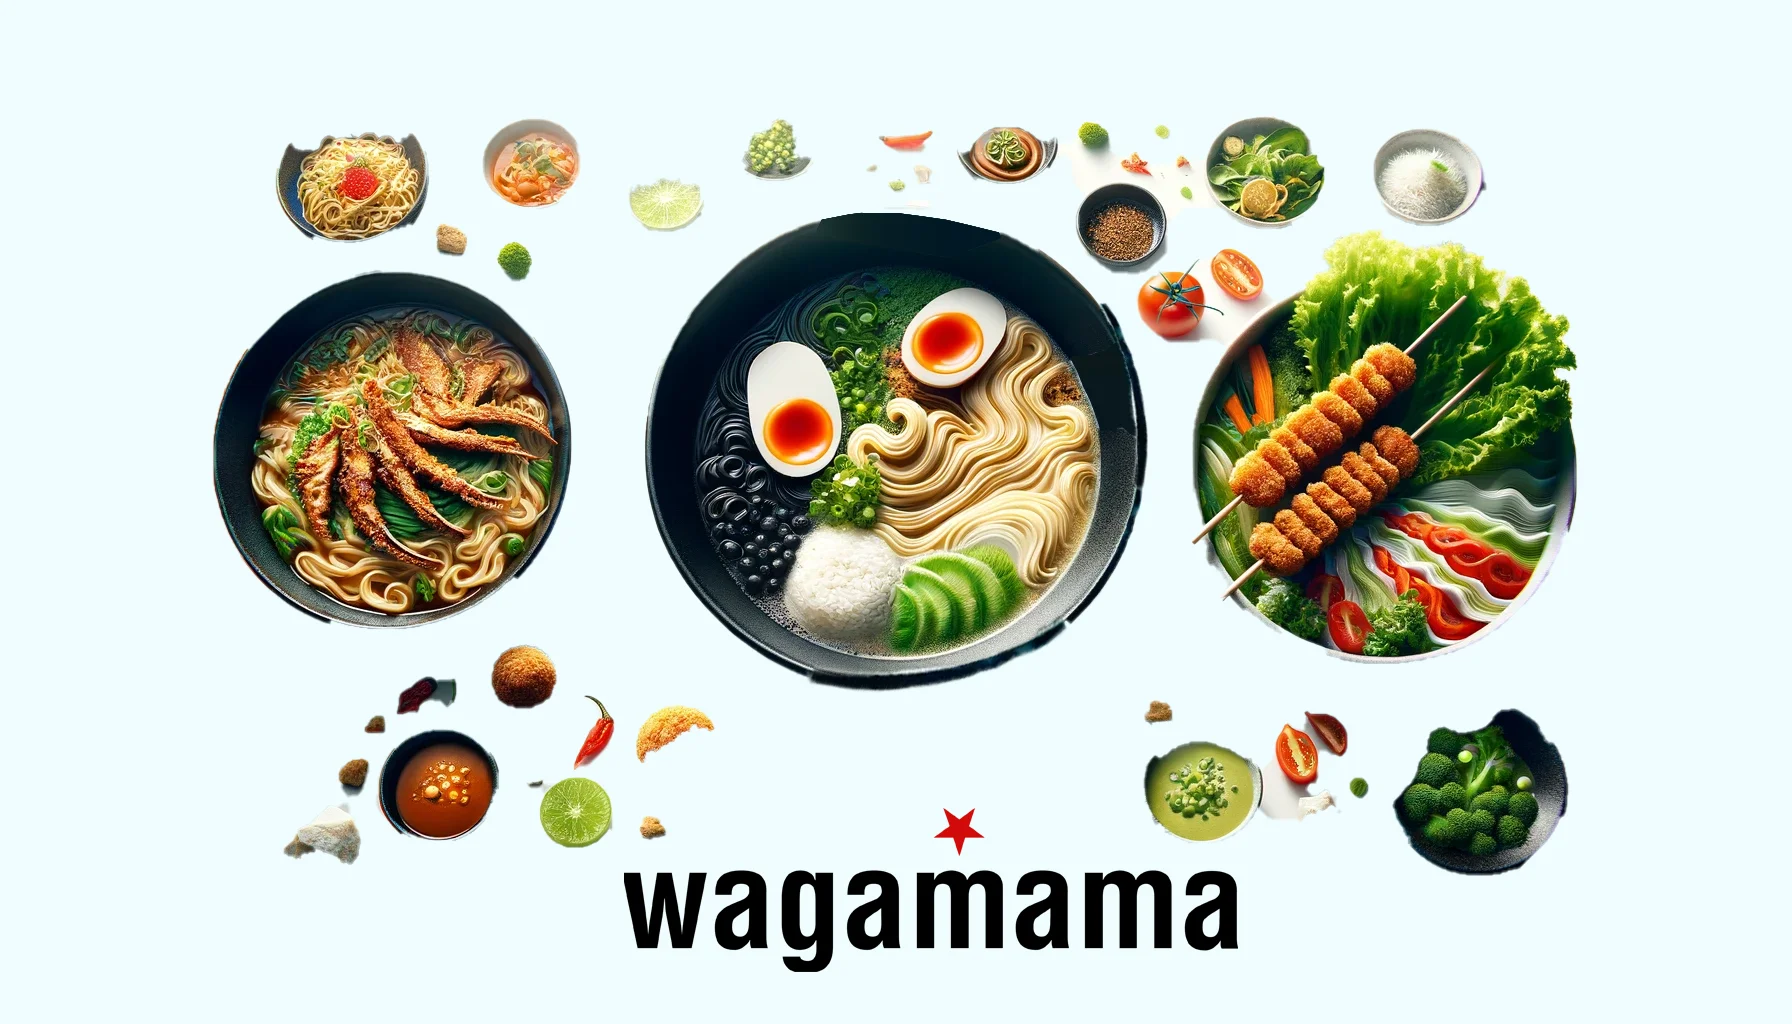 wagamama menu prices